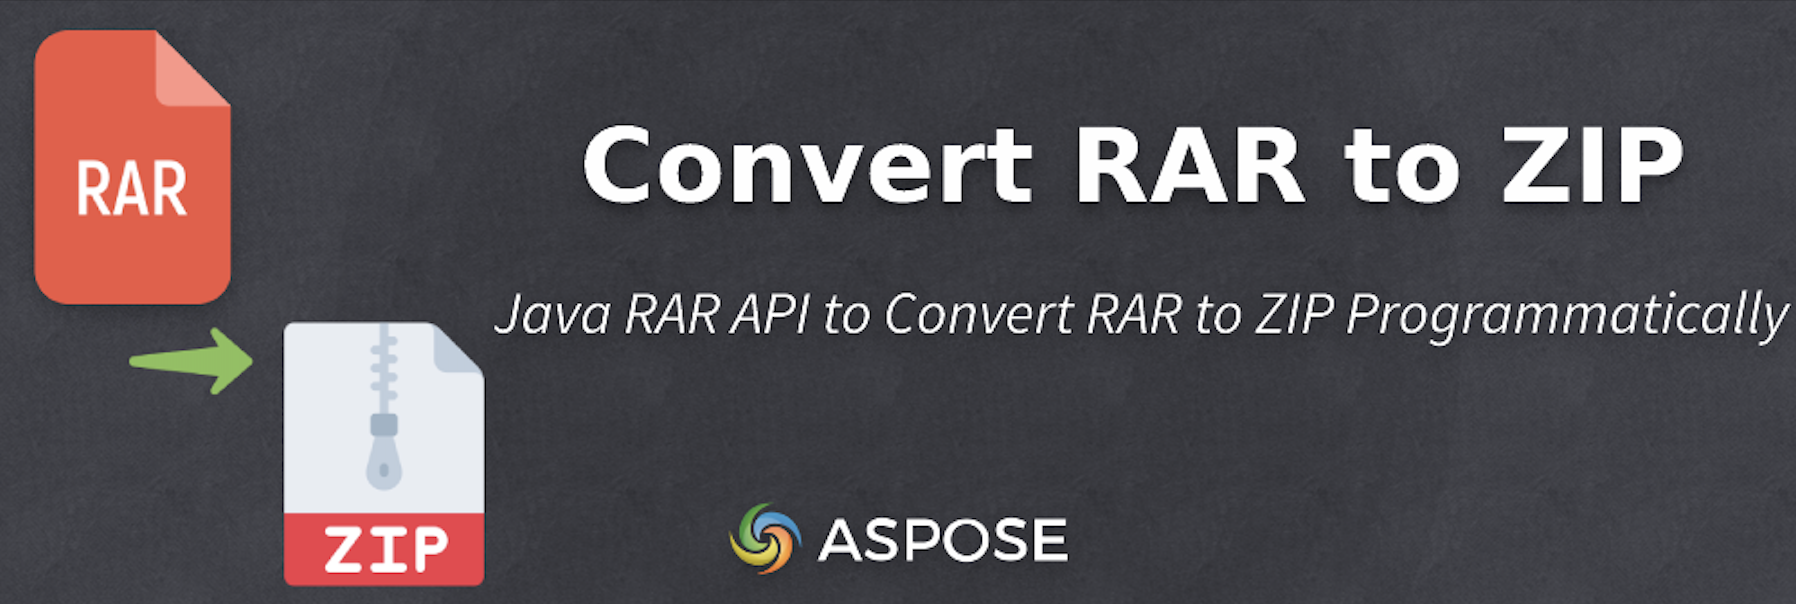 Converter RAR em ZIP em Java - Java RAR API